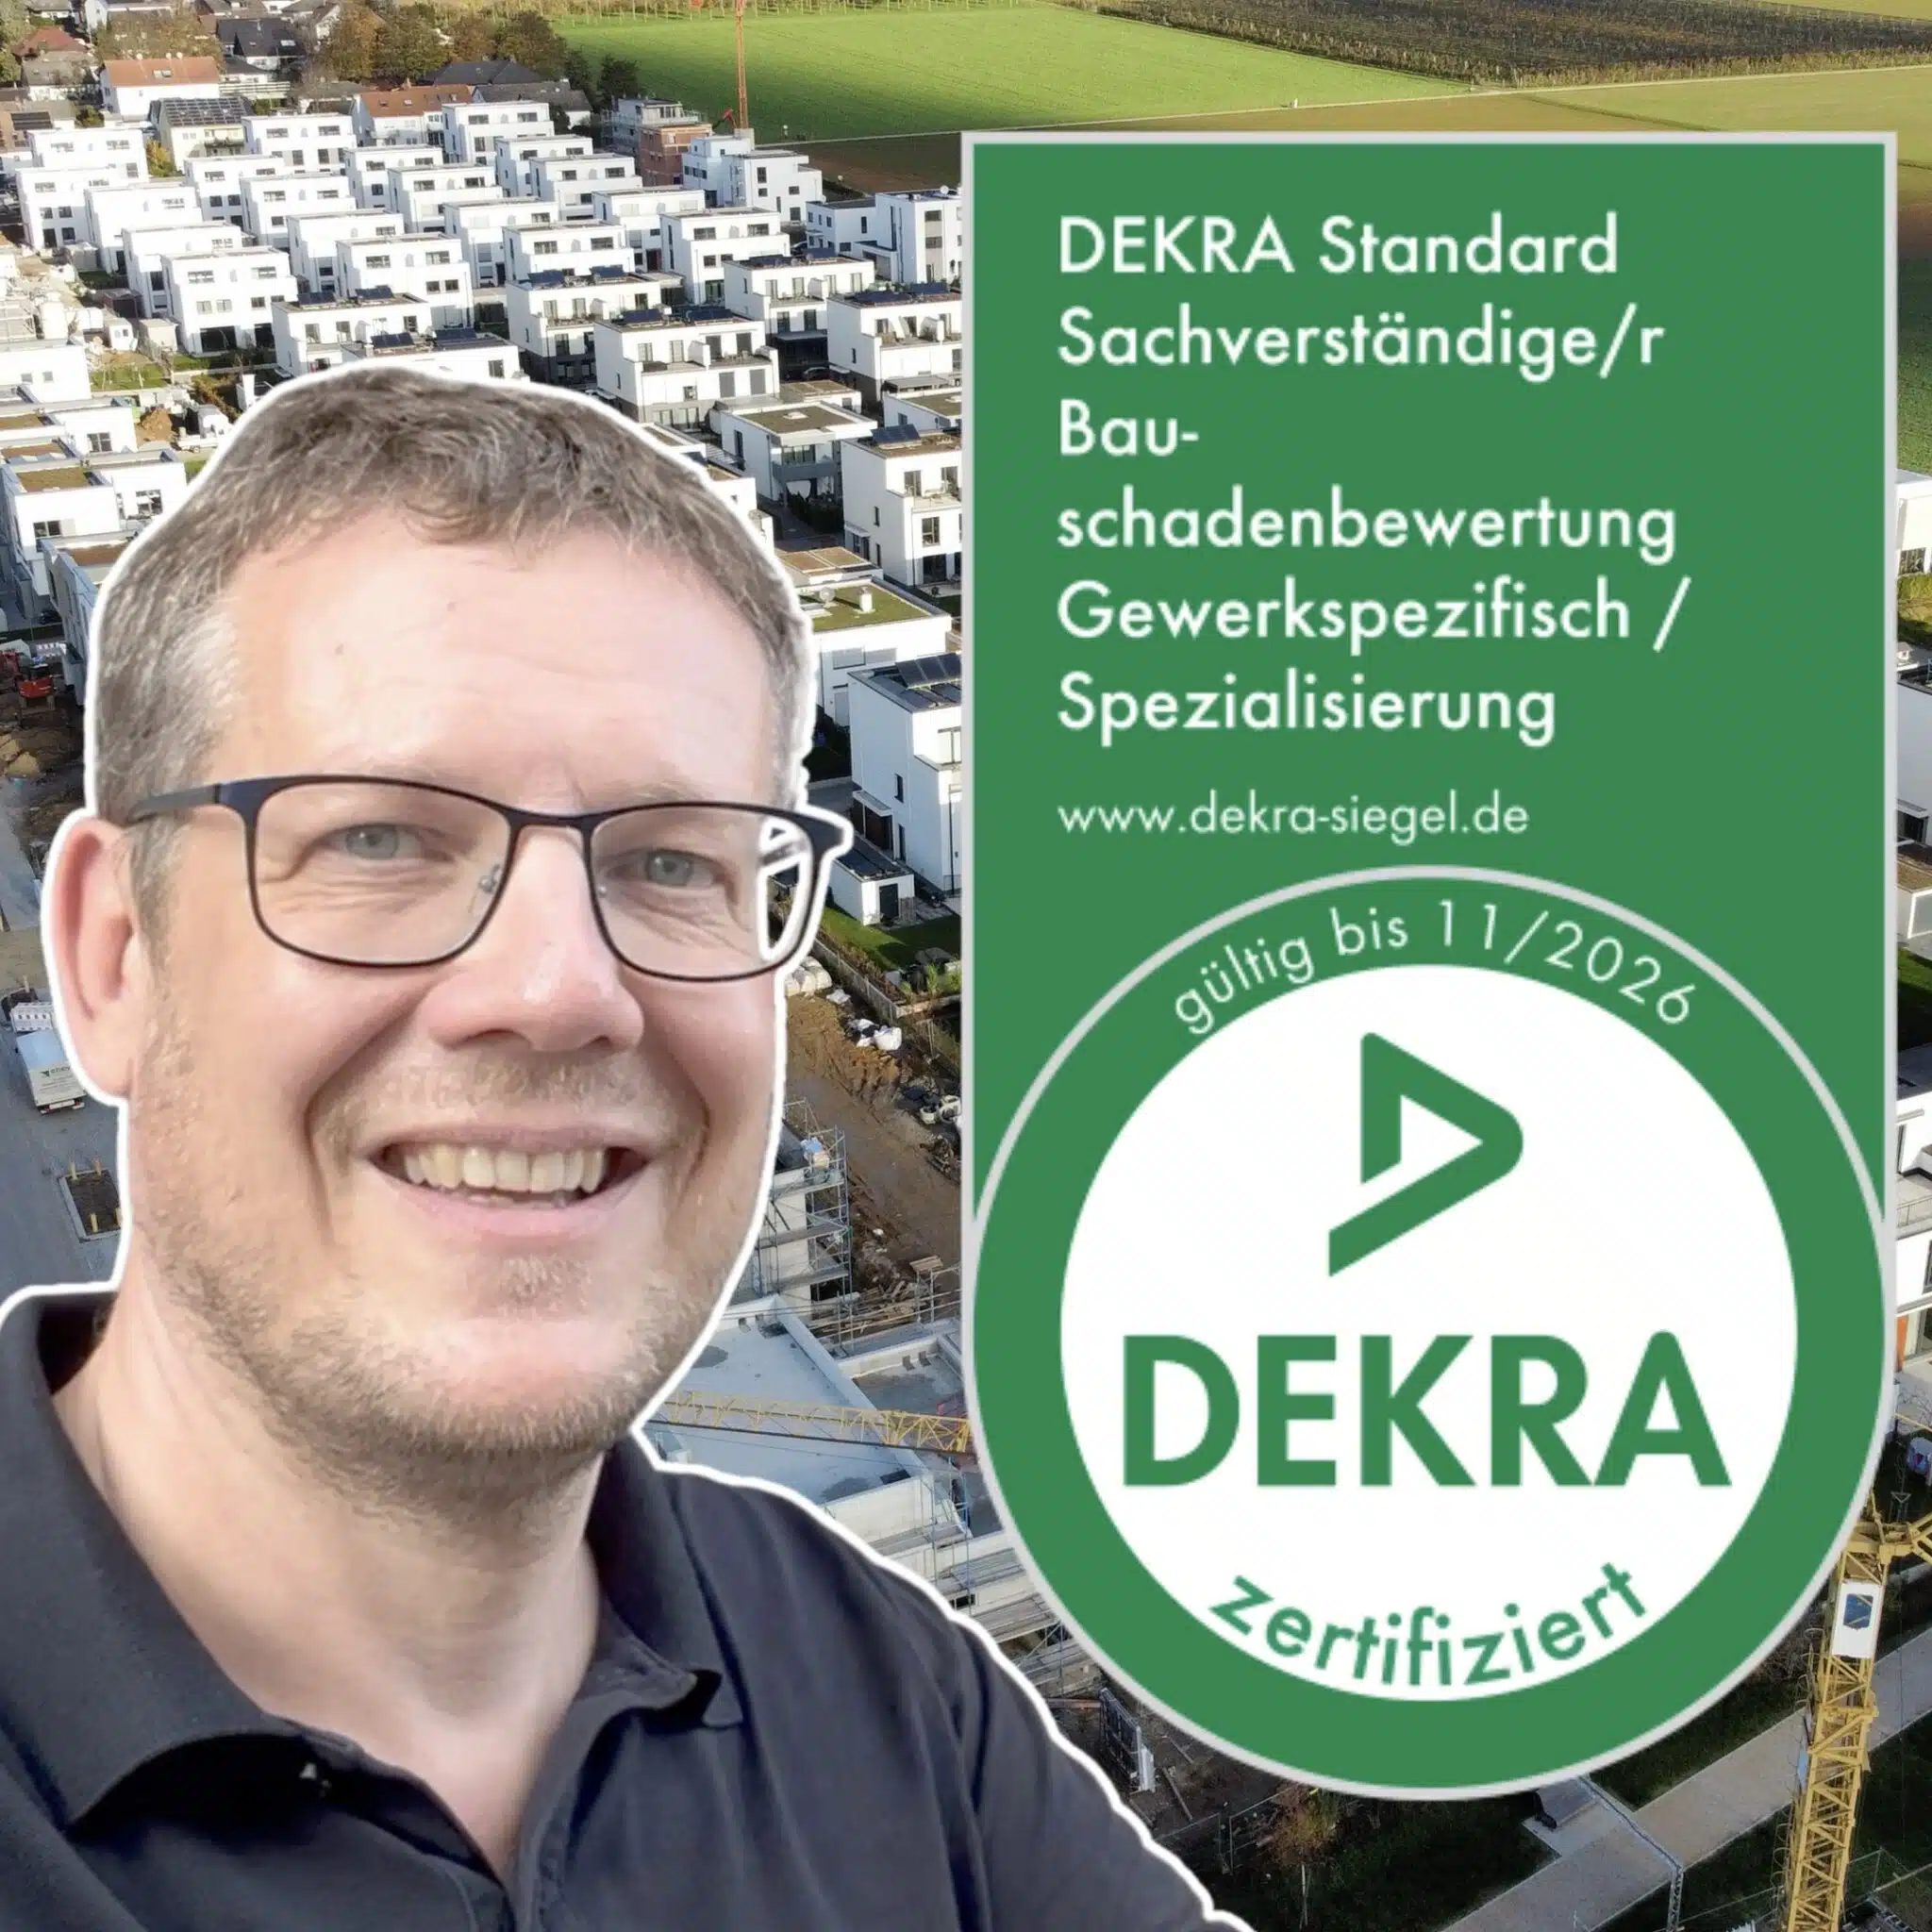 Der Baugutachter Carsten Nessler vor einem Neubaugebiet, mit dem Siegel des DEKRA für den zertifizierten Sachverständigen Bauschadenbewertung für das Hochbaugewerk